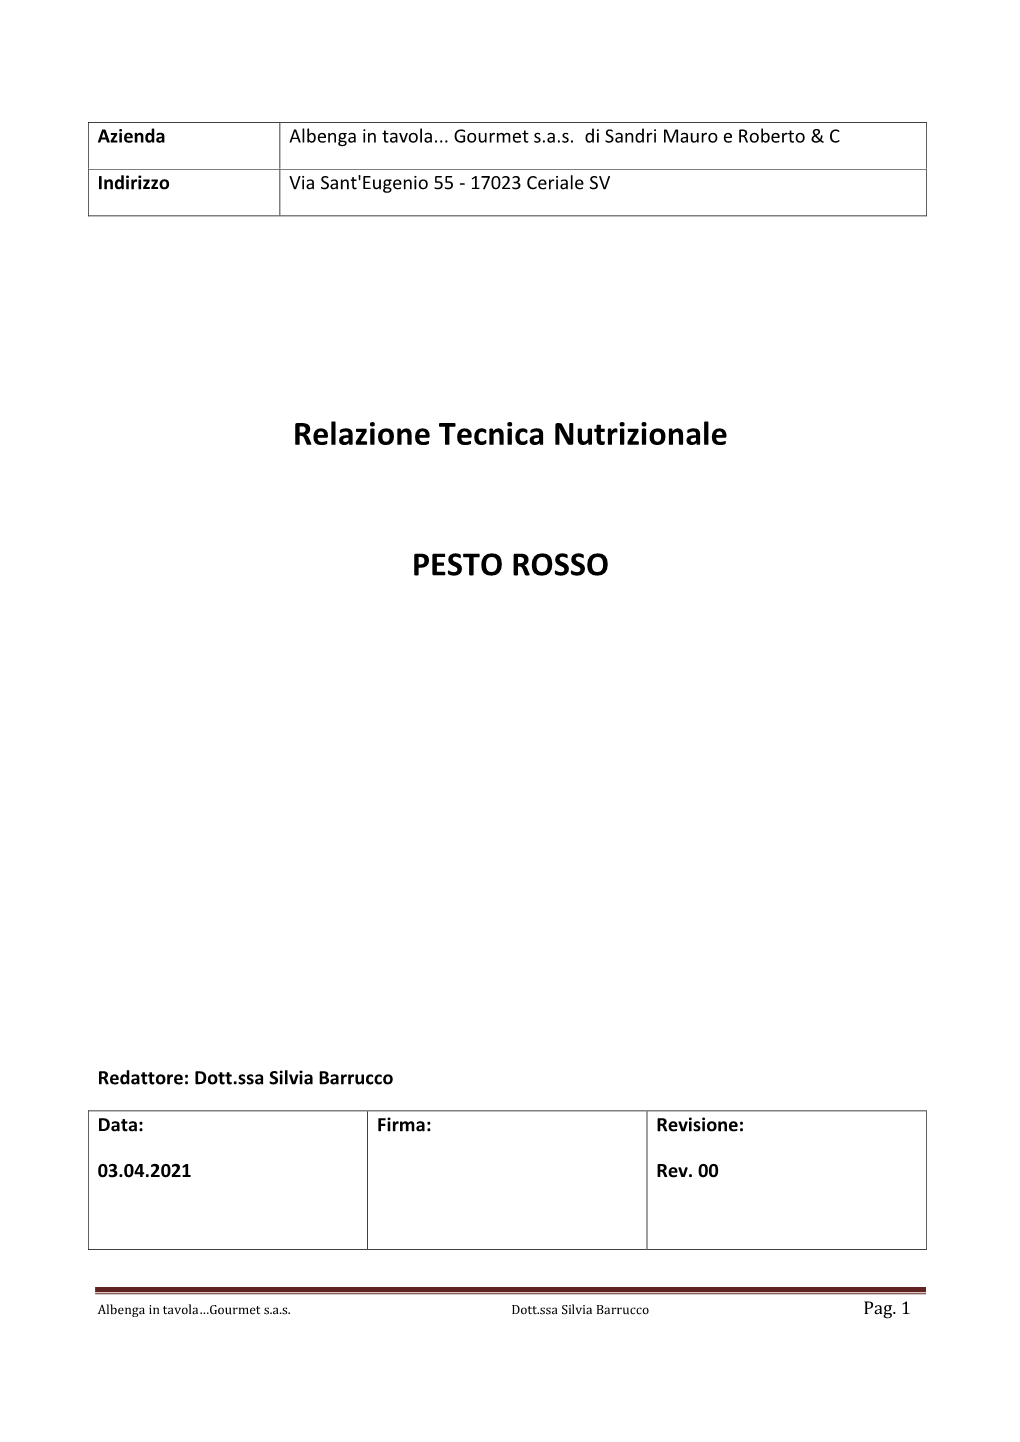 Relazione Tecnica Nutrizionale PESTO ROSSO